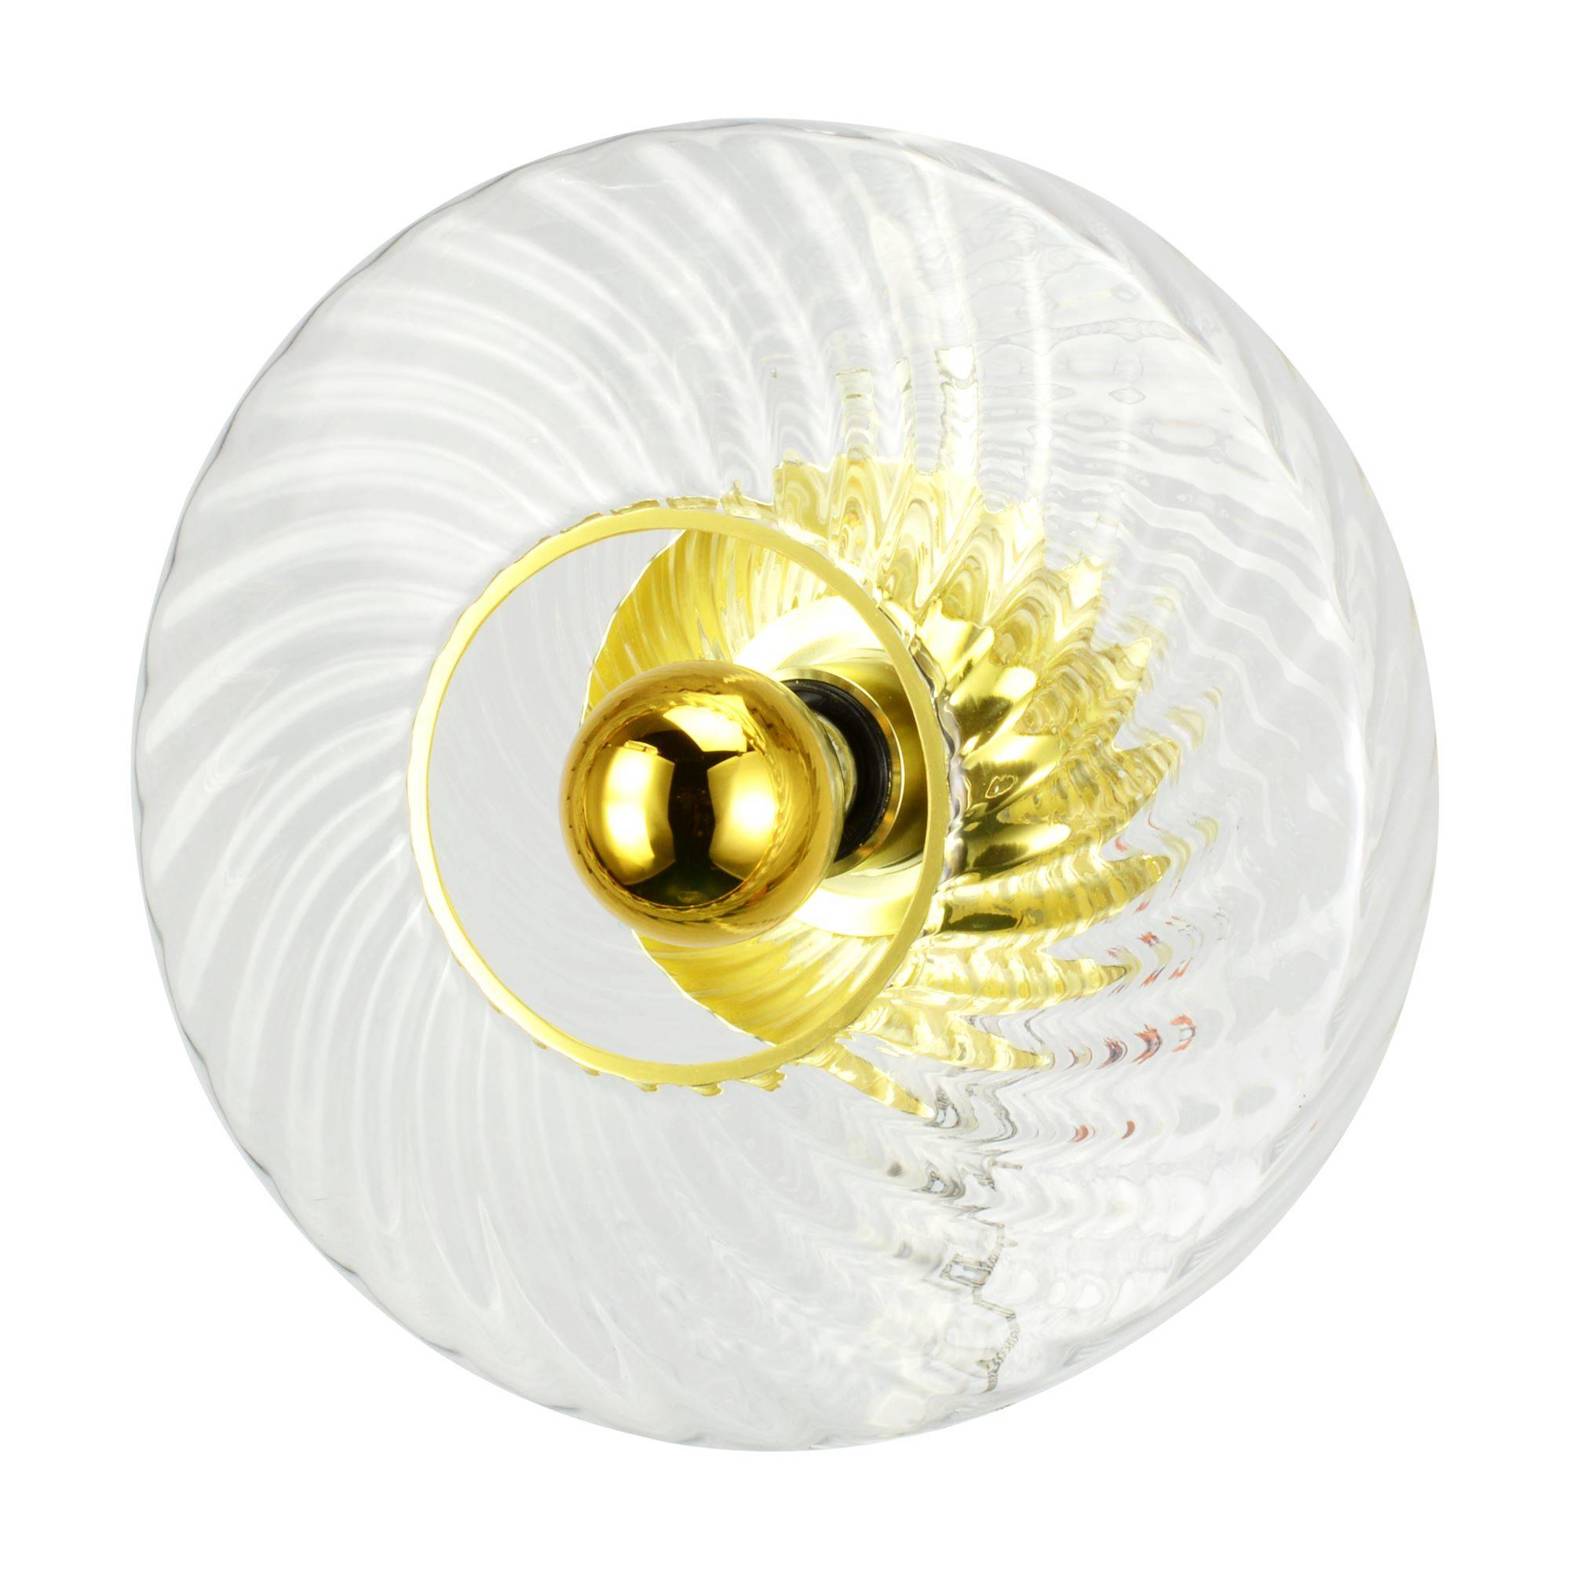 Elements Lighting :: Lampa ścienna / kinkiet Petite Roxanne diamentowy śr. 20 cm